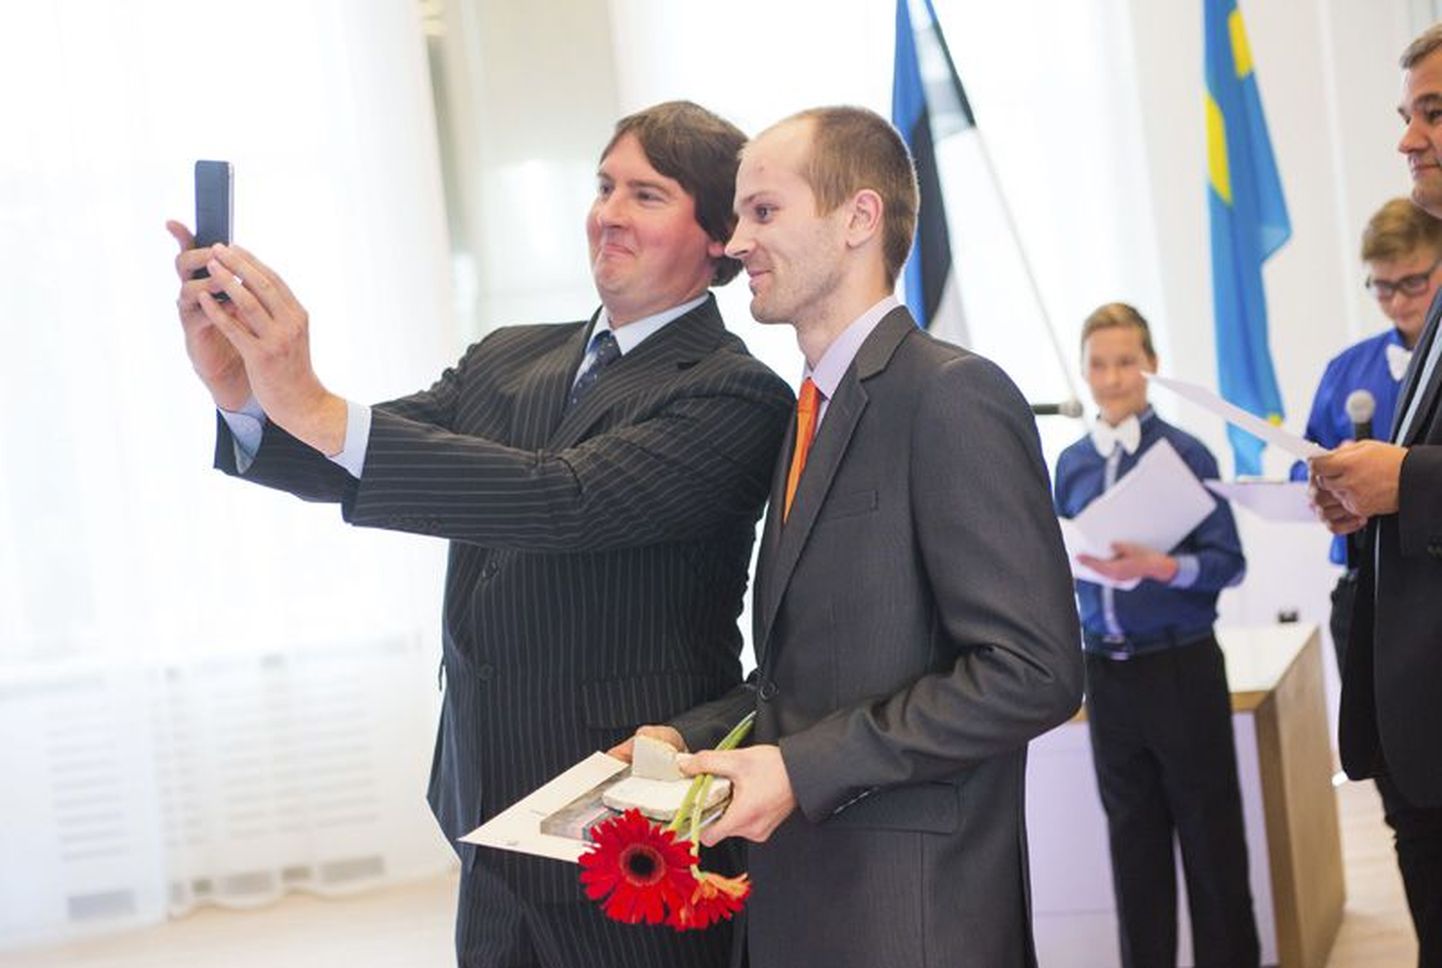 Eelmise aasta septembris toimus Targas Majas maakondlik aasta õpetaja auhinnagala. Rakvere ametikooli direktor Kuno Rooba (vasakul) tegi oma kooli parima kutseõpetaja Raiko Kaasikuga rahva ees selfie.